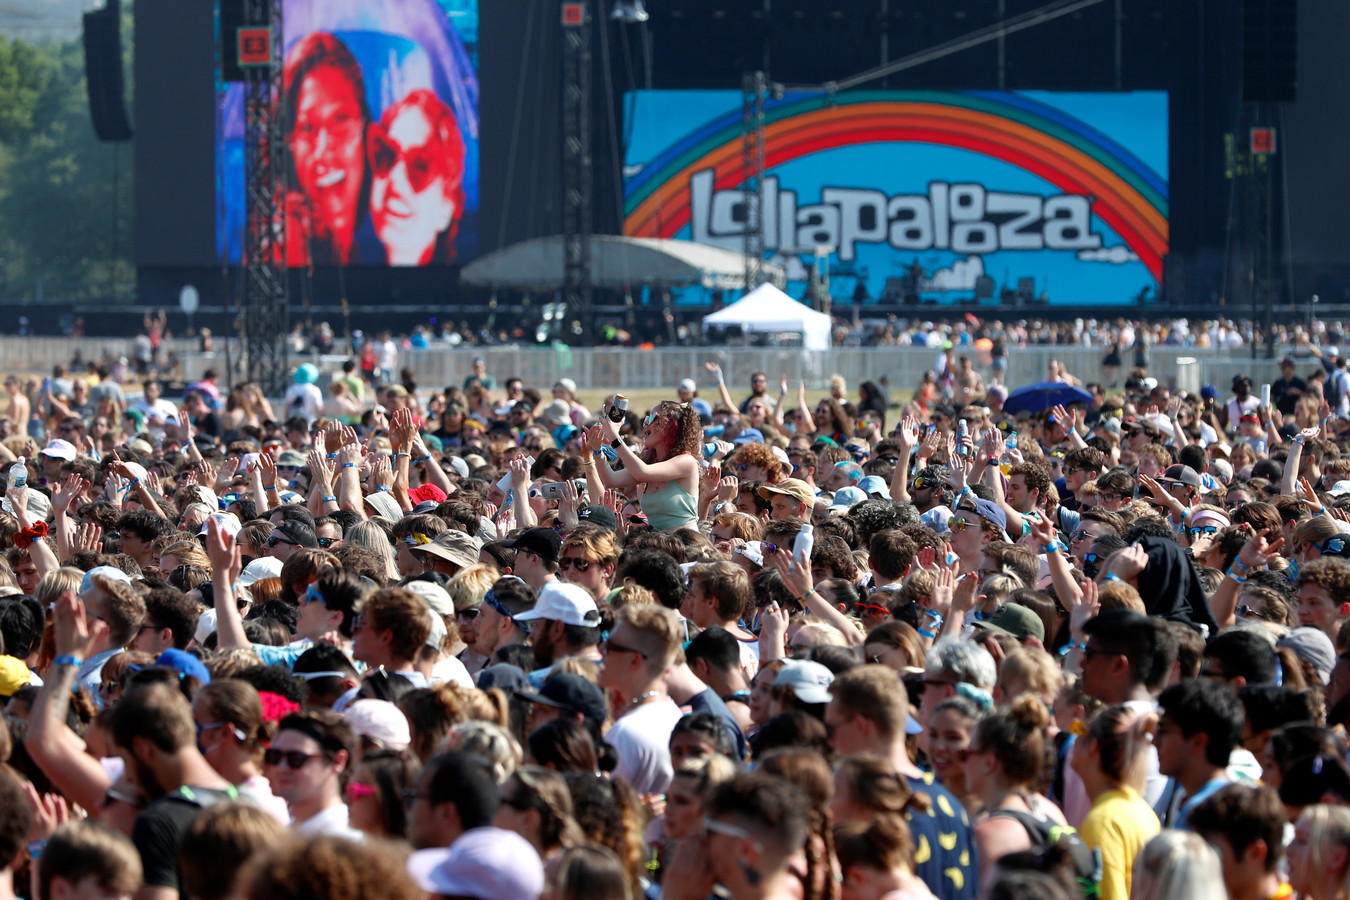 Lollapalooza was een van de eerste grote festivals in Amerika die weer doorging sinds het begin van de coronacrisis.